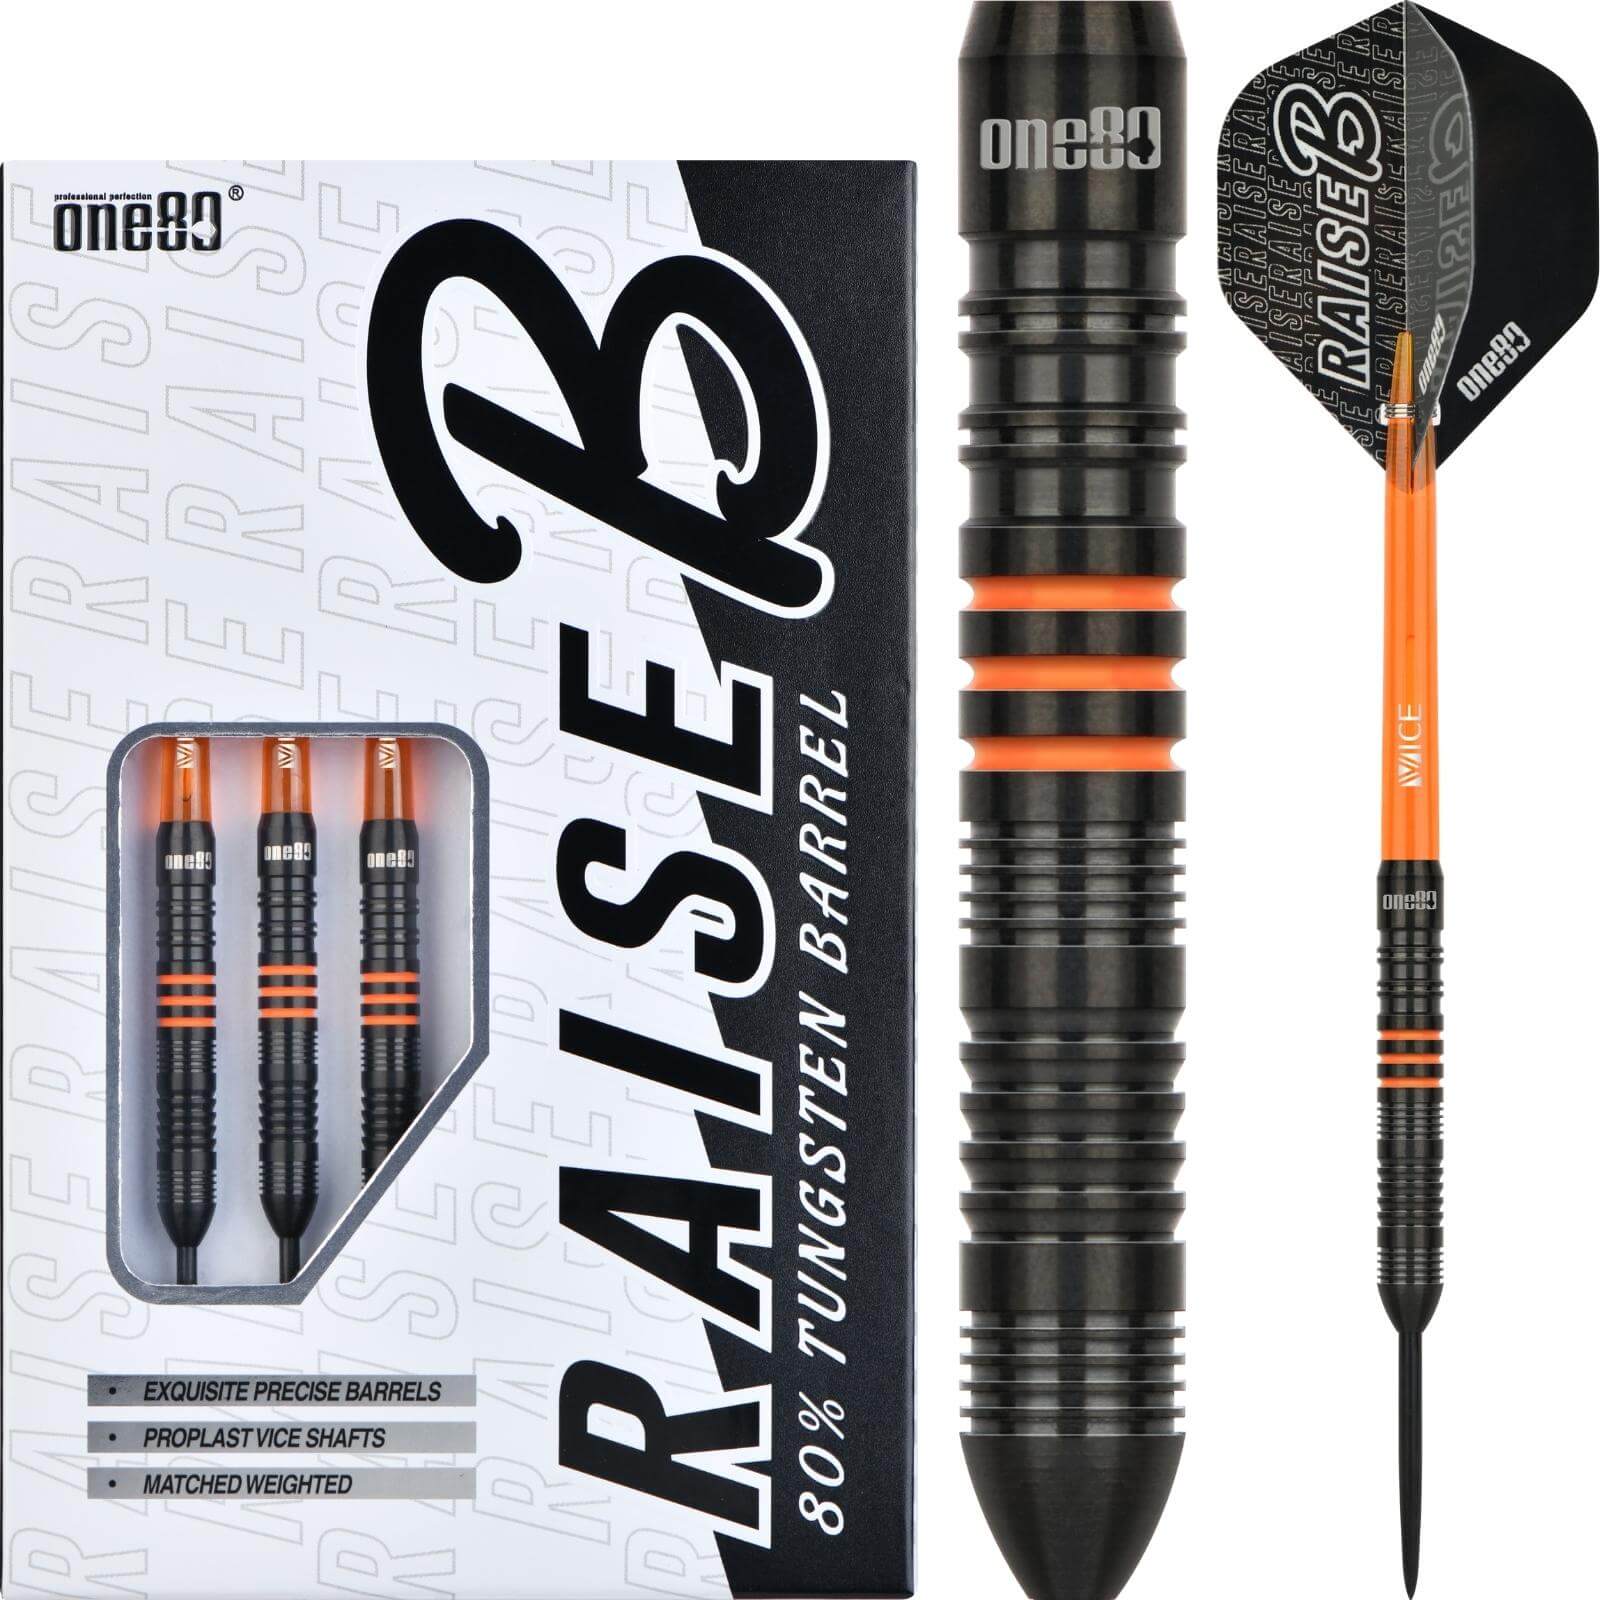 Darts - One80 - Raise B Darts - Orange - Steel Tip - 80% Tungsten - 21g 23g 